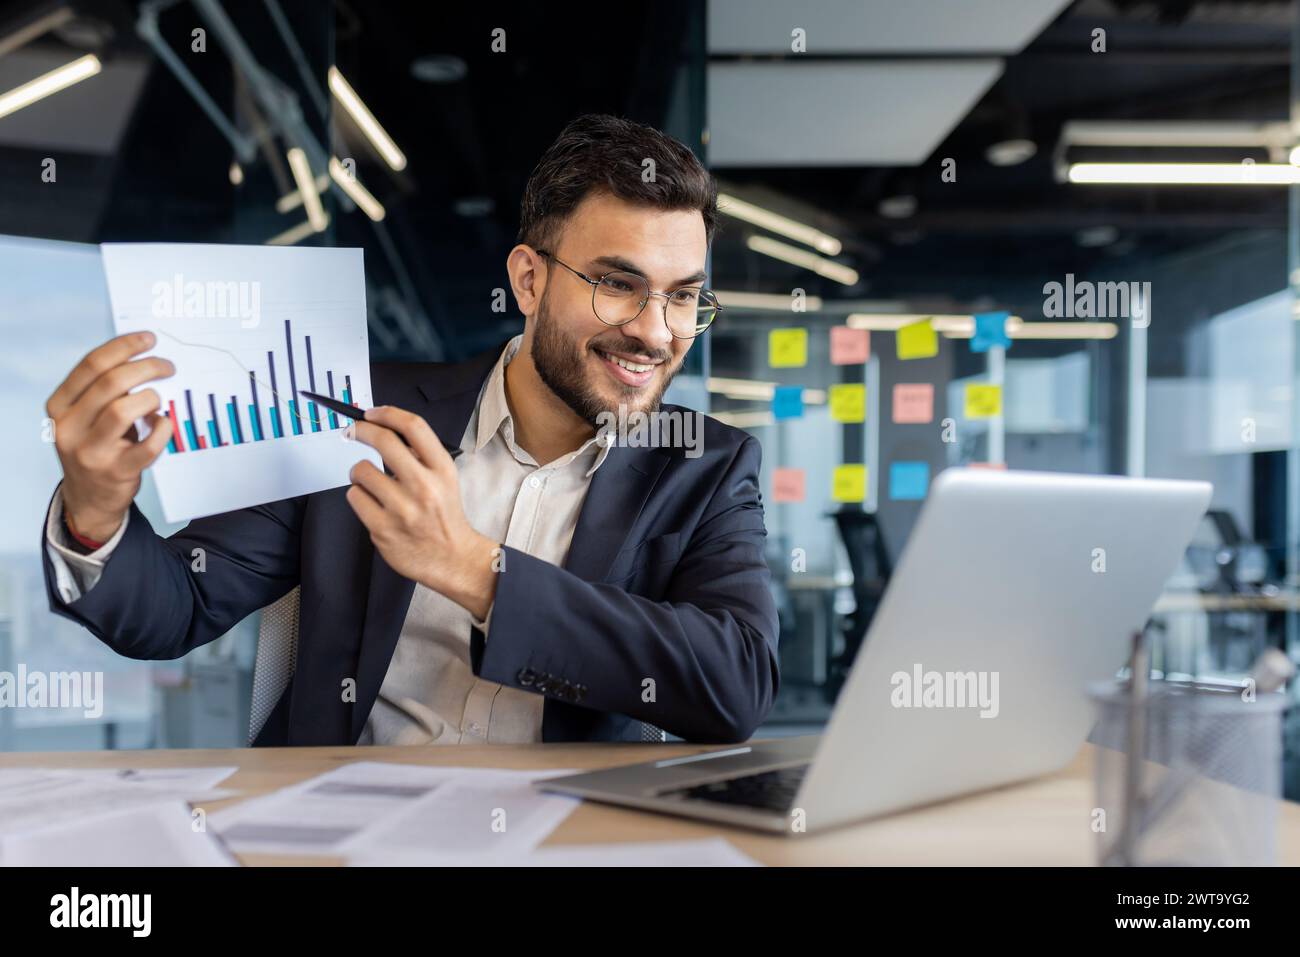 Un homme d'affaires souriant dans un costume affichant un graphique à barres à la caméra, illustrant la croissance et le succès de l'entreprise dans un cadre de bureau moderne. Banque D'Images